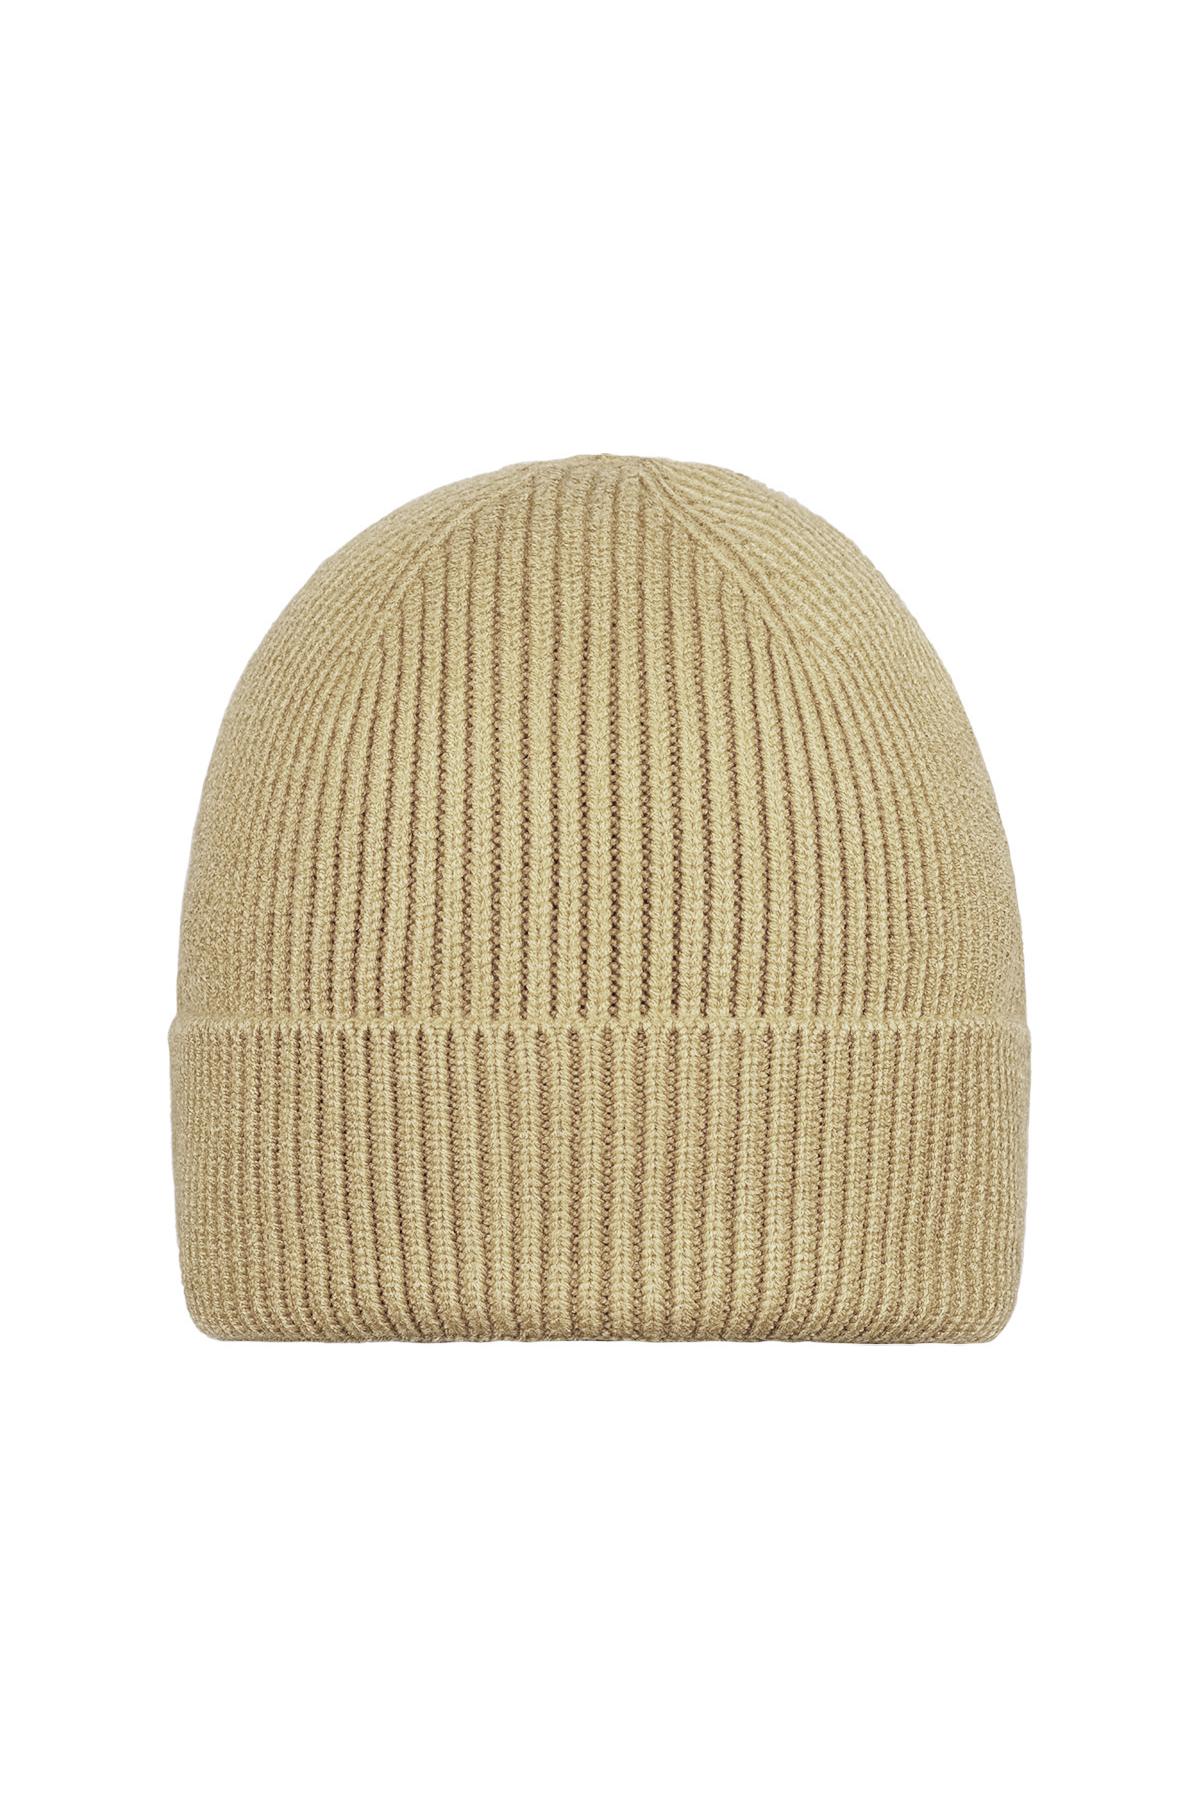 Kışlık şapka kum rengi Sand Acrylic 